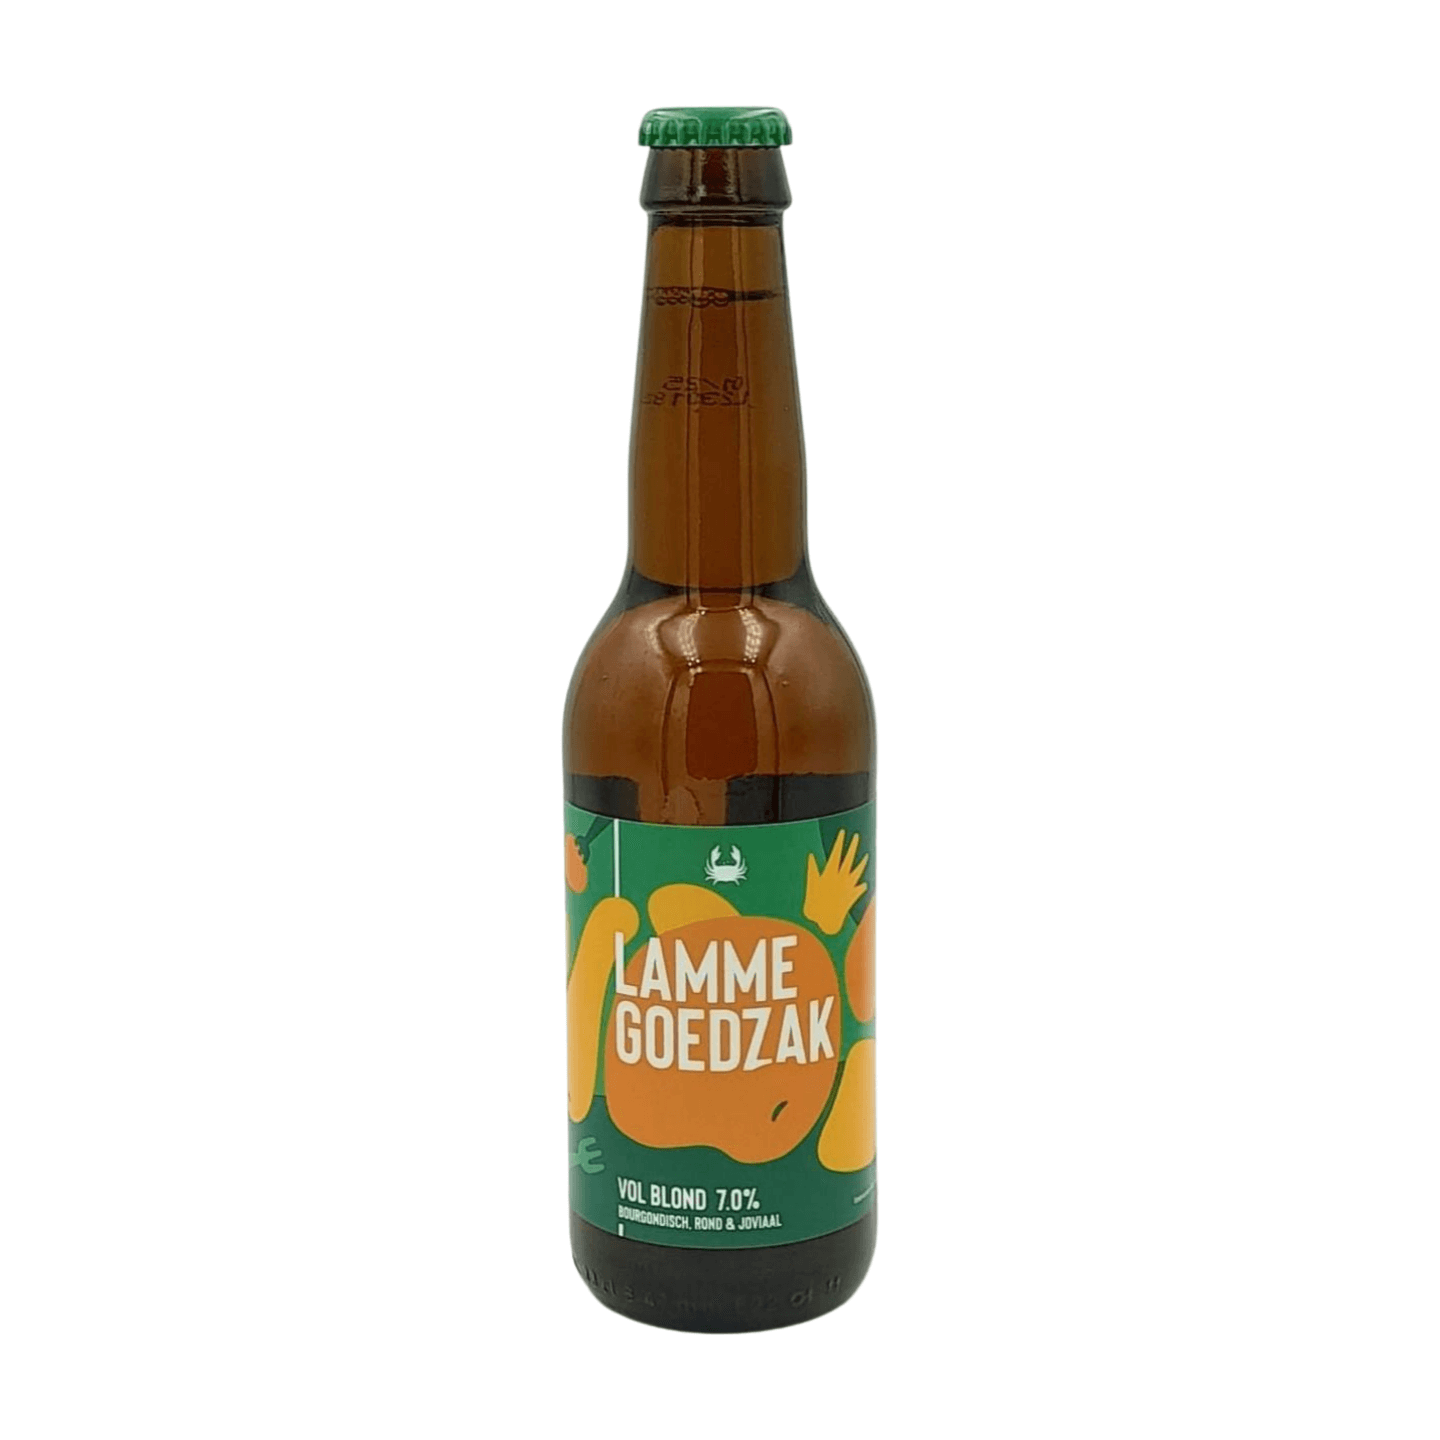 Schelde Brouwerij Lamme Goedzak | Blond Webshop Online Verdins Bierwinkel Rotterdam